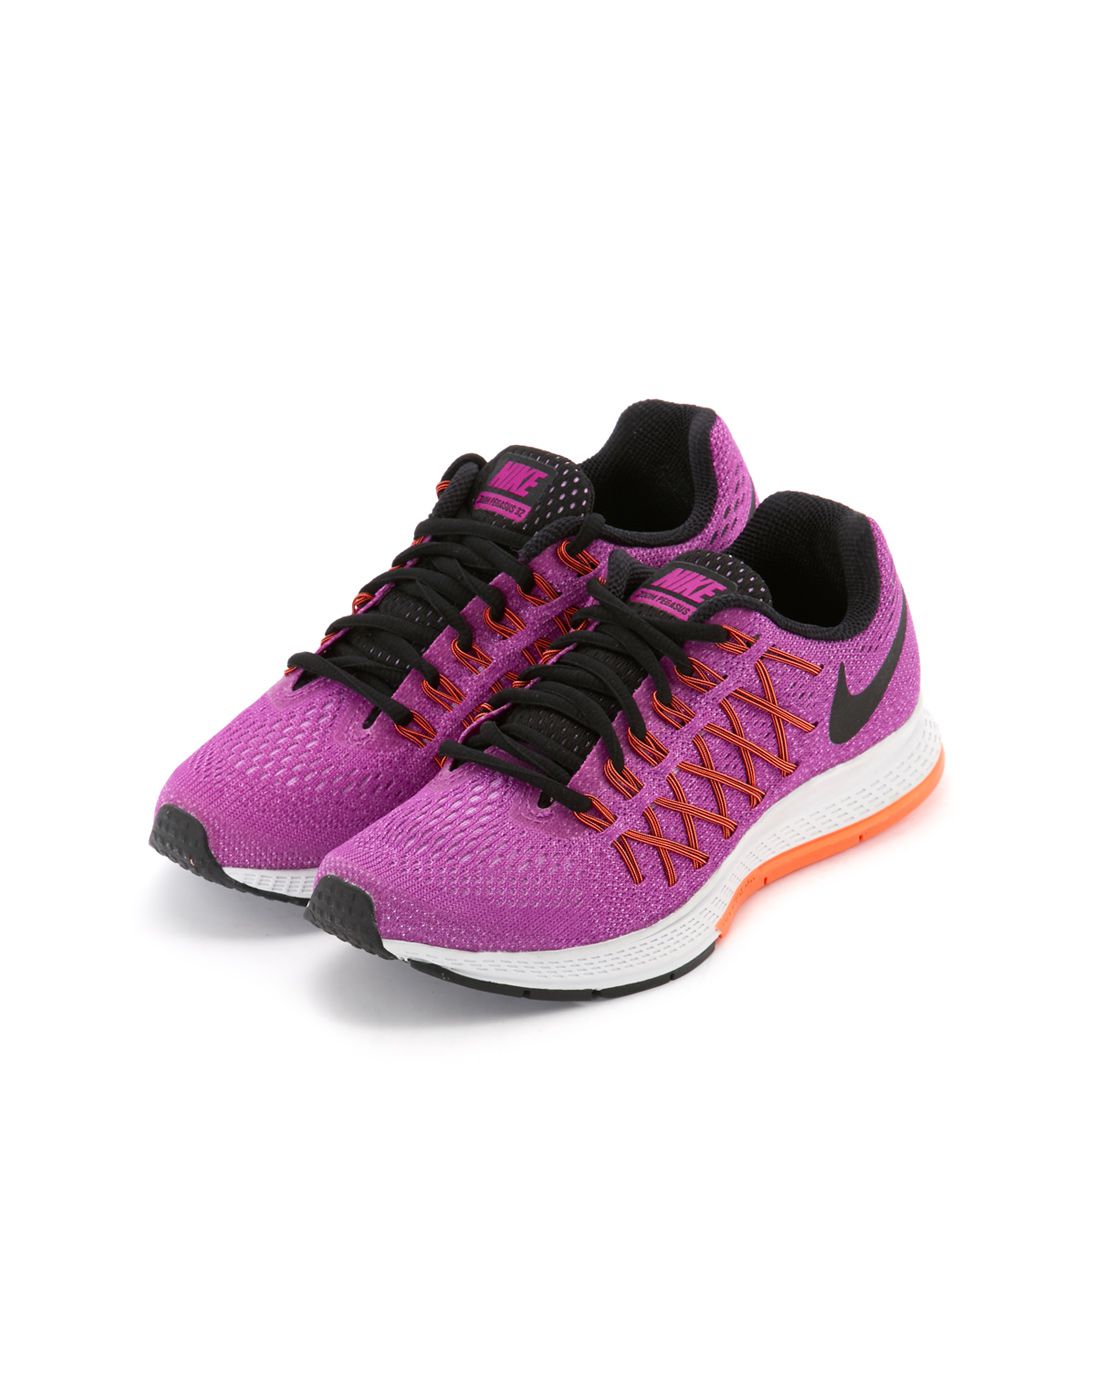 zoom 女款紫色跑步鞋 跑步系列